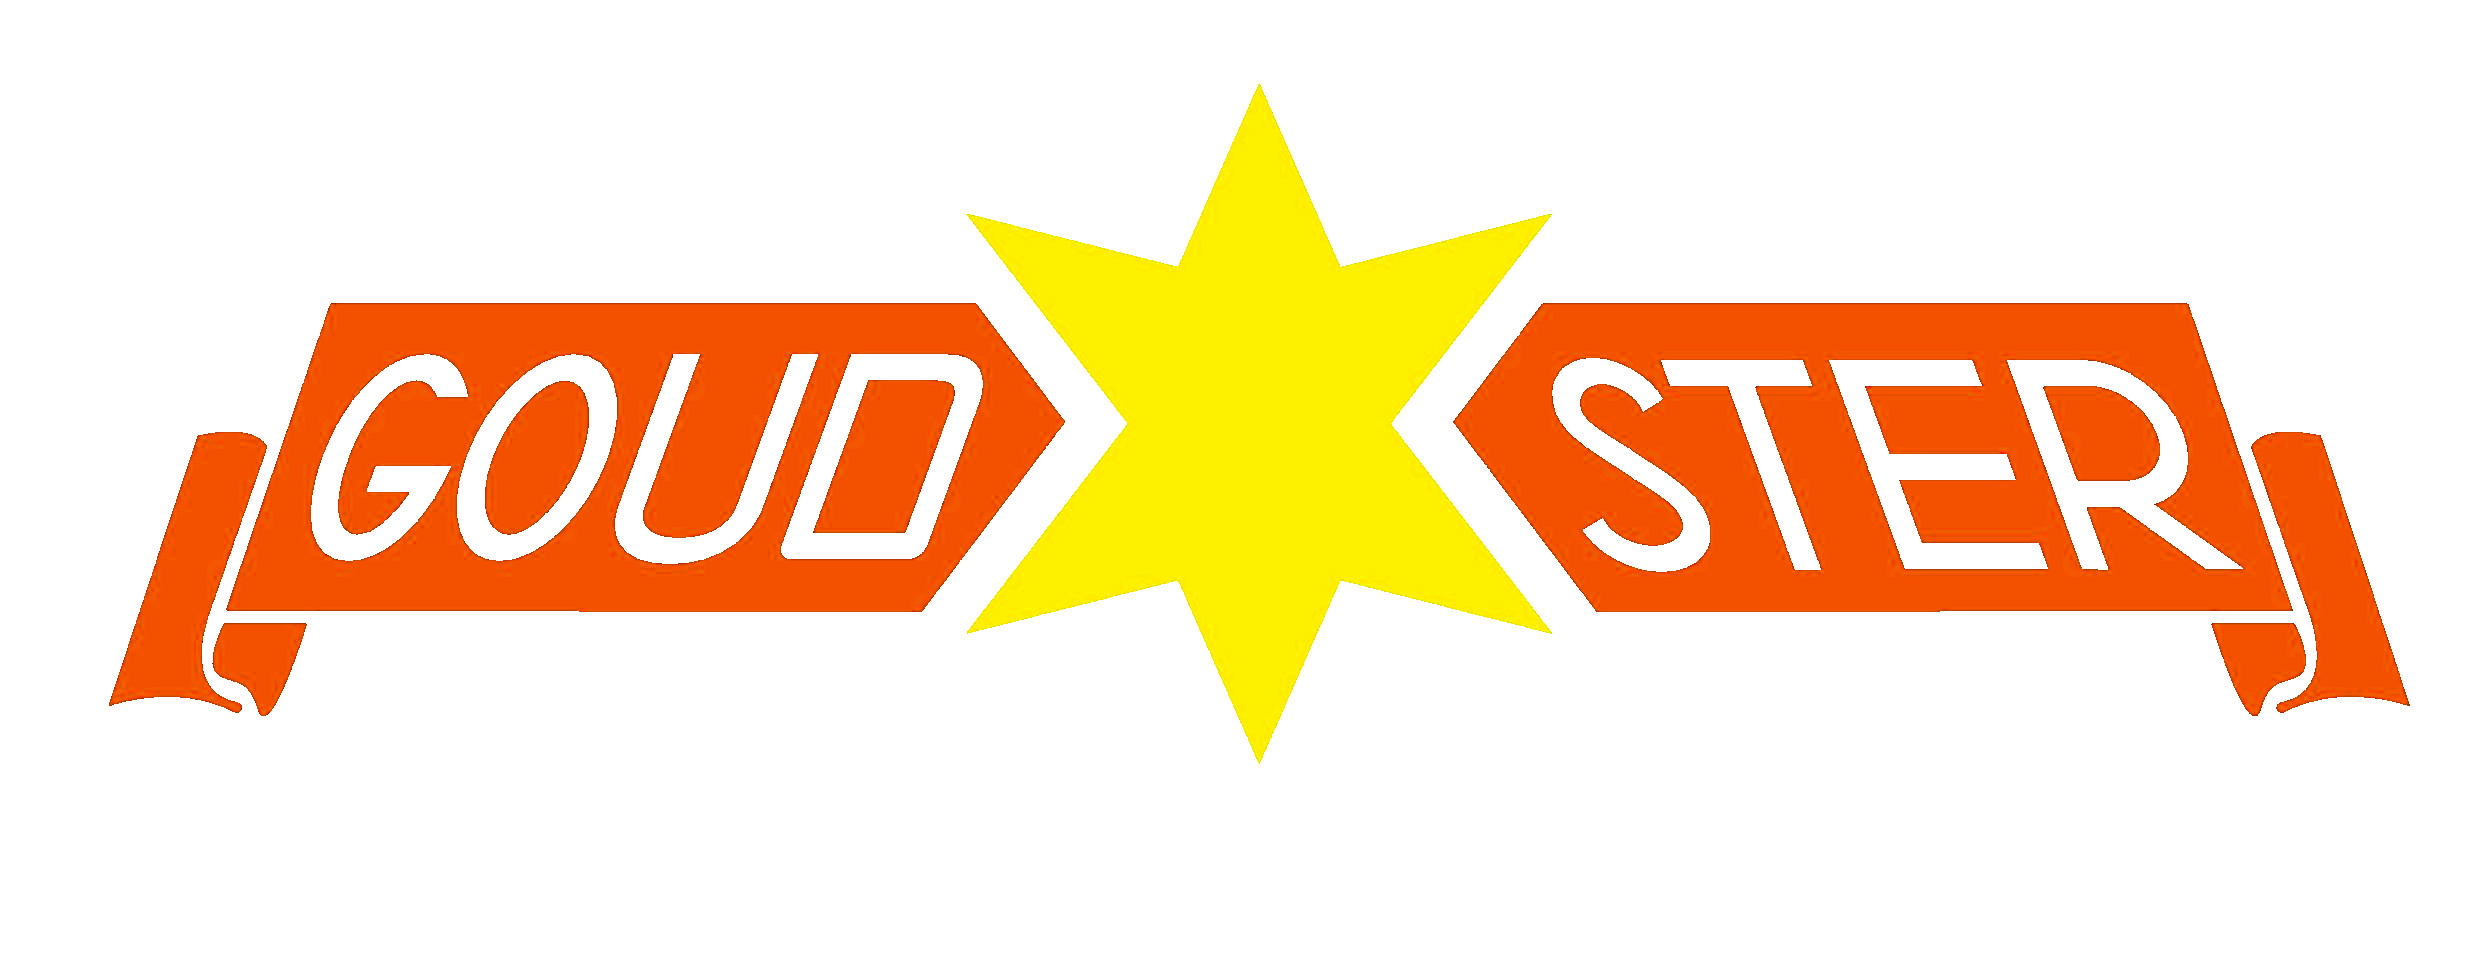 Goudster Logo